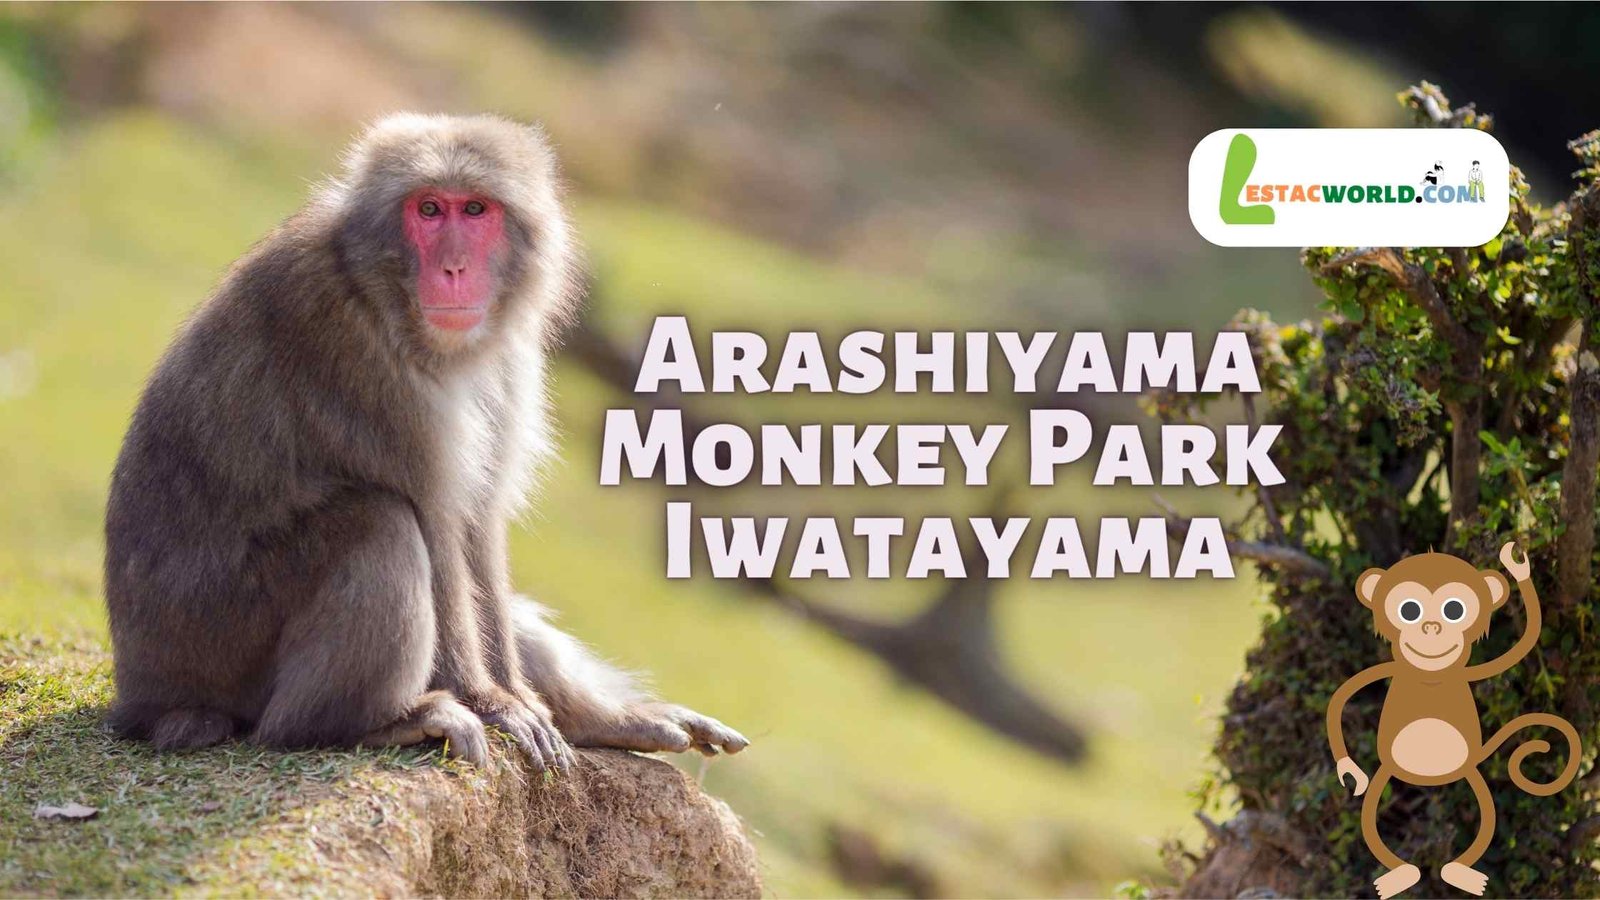 about Arashiyama Monkey Park Iwatayama